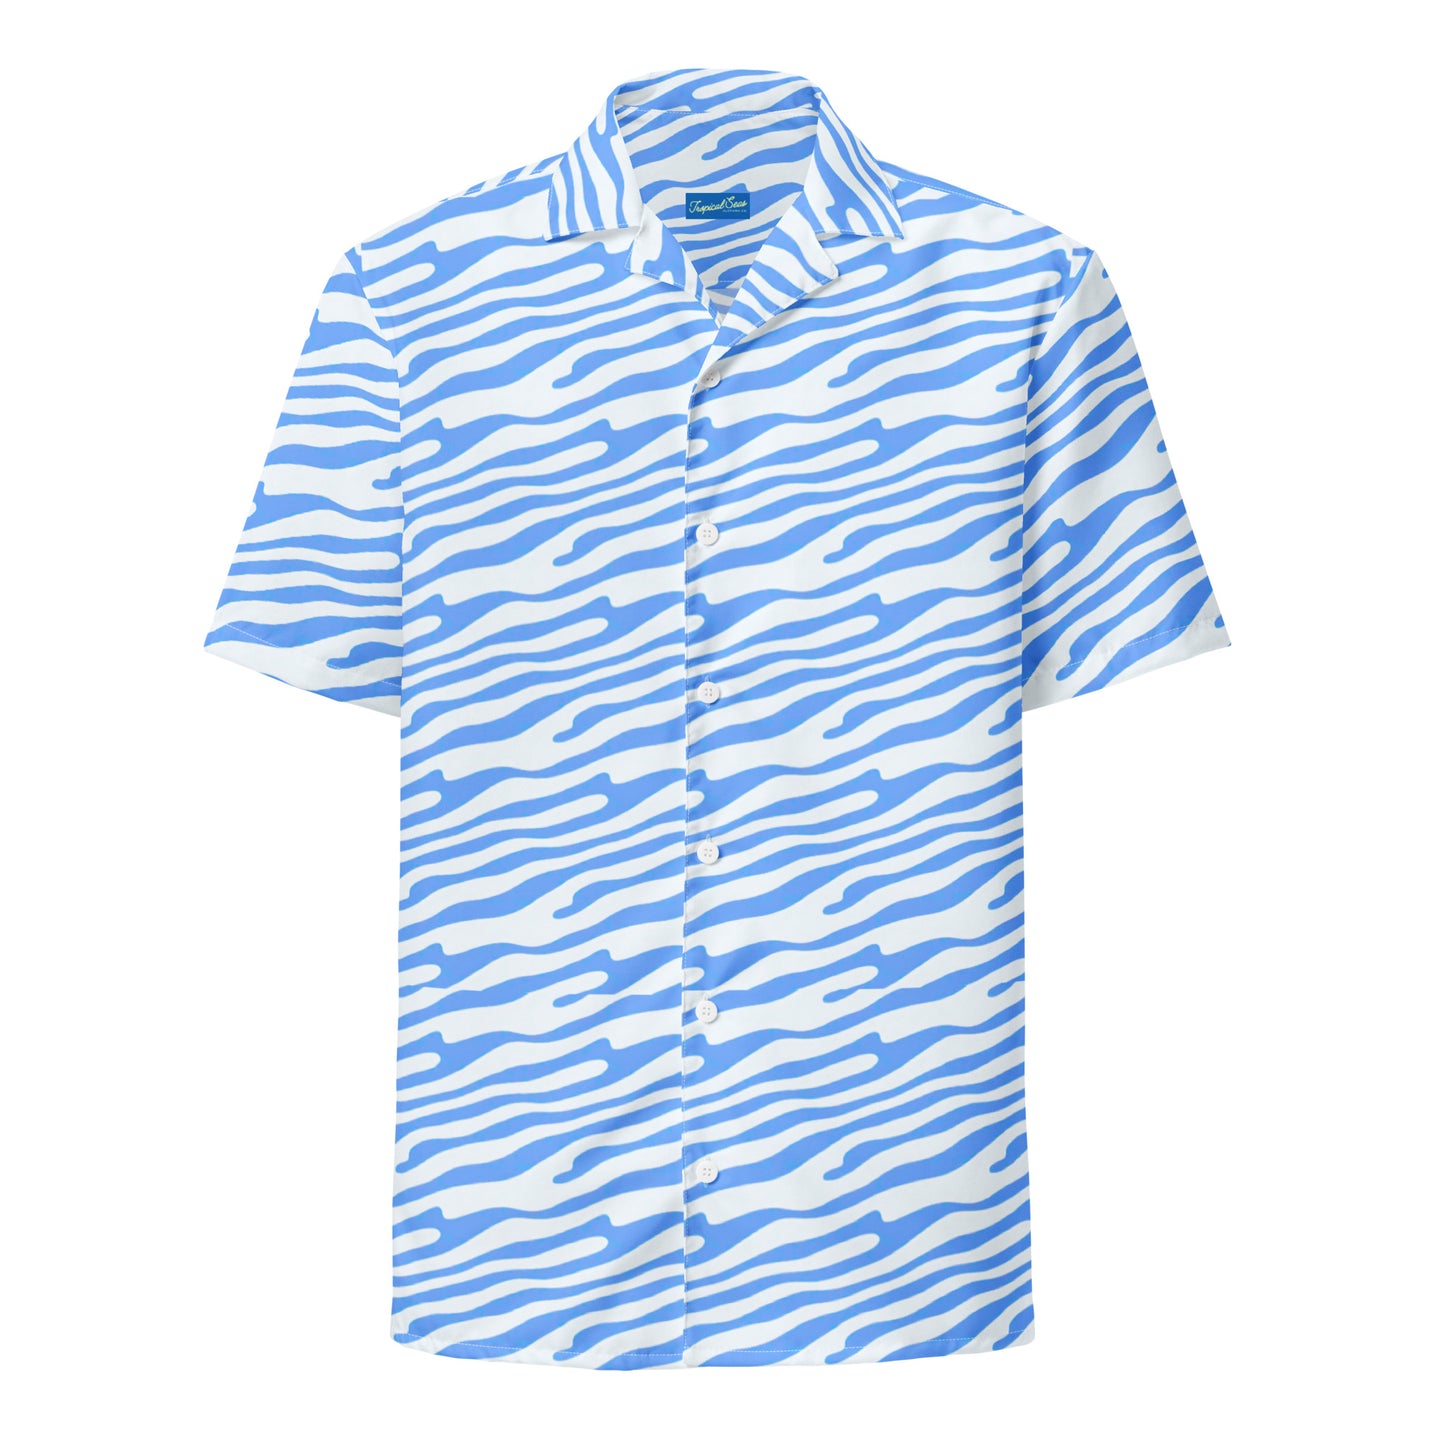 Ocean Blue button shirt - Tropical Seas Clothing 